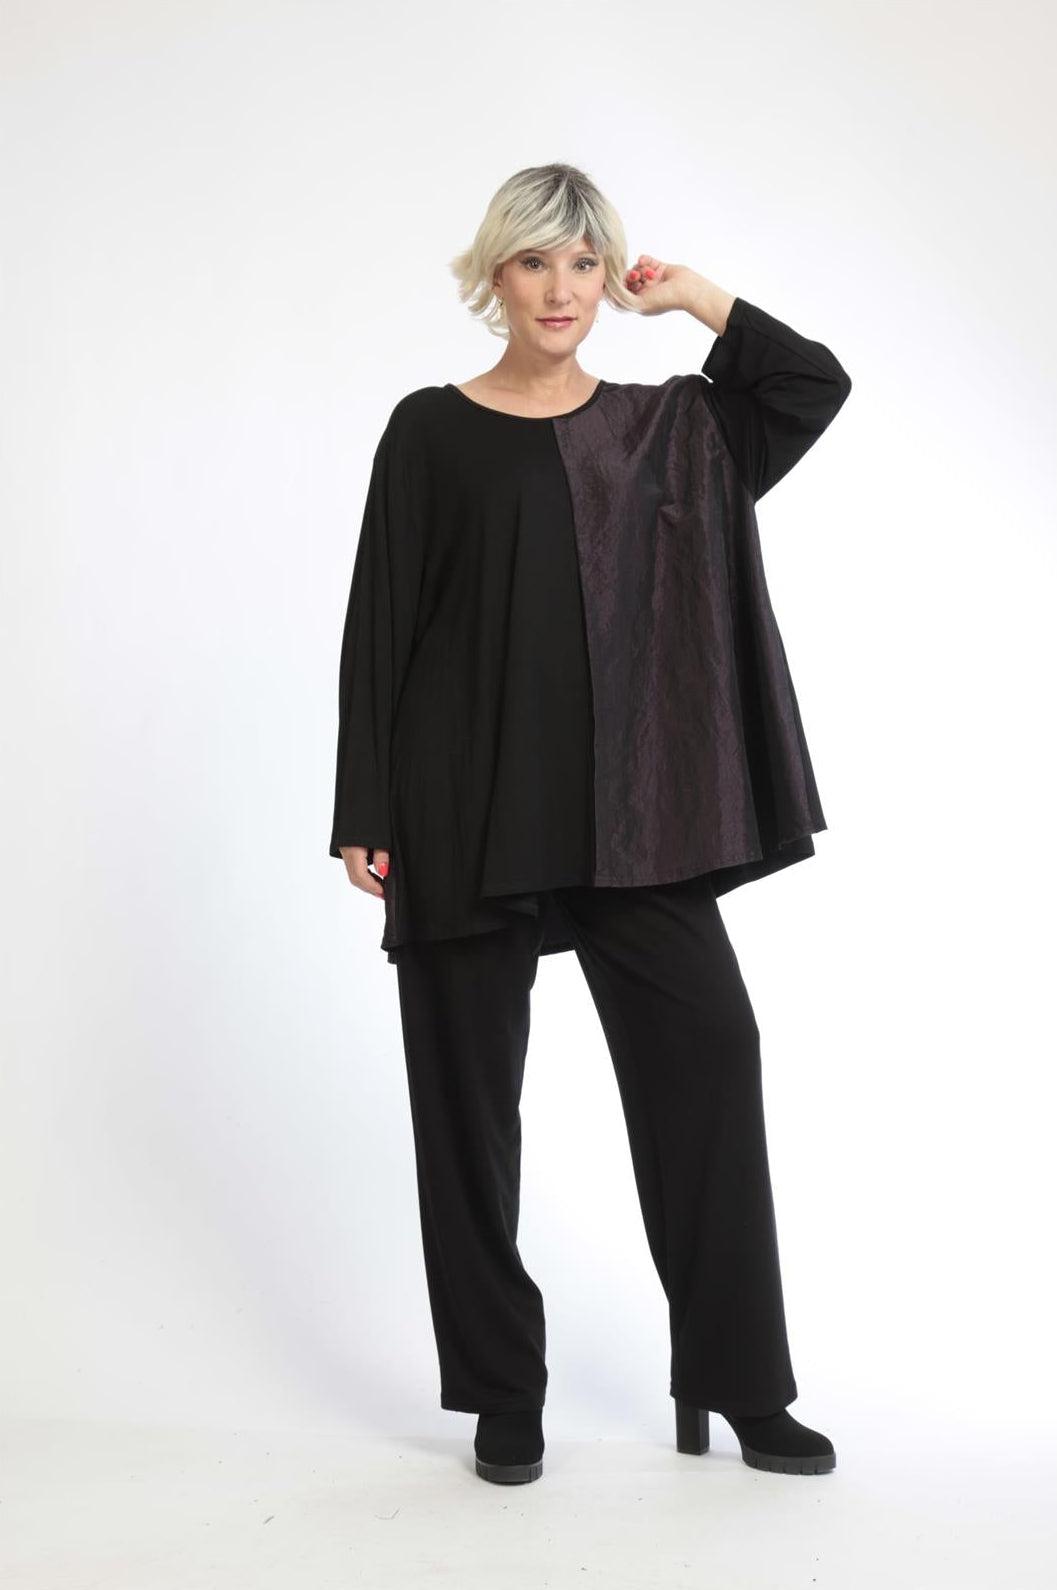 Winter Shirt in Glocken Form aus er Taft Qualität, Schwarz-Violett Lagenlook Oversize Mode B2B Großhandel